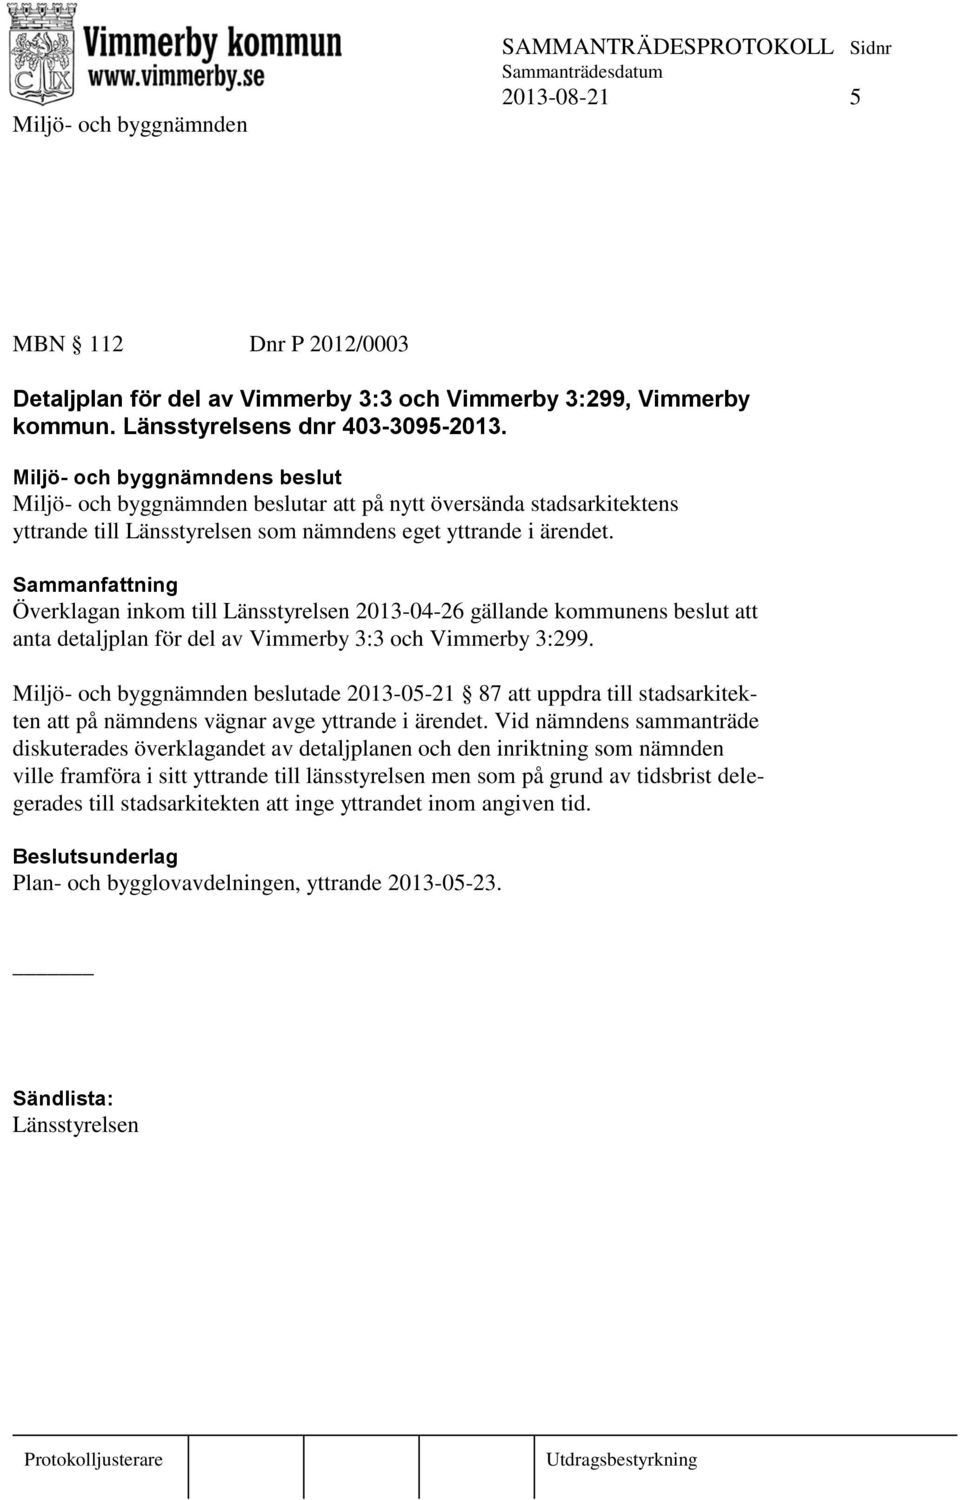 Överklagan inkom till Länsstyrelsen 2013-04-26 gällande kommunens beslut att anta detaljplan för del av Vimmerby 3:3 och Vimmerby 3:299.